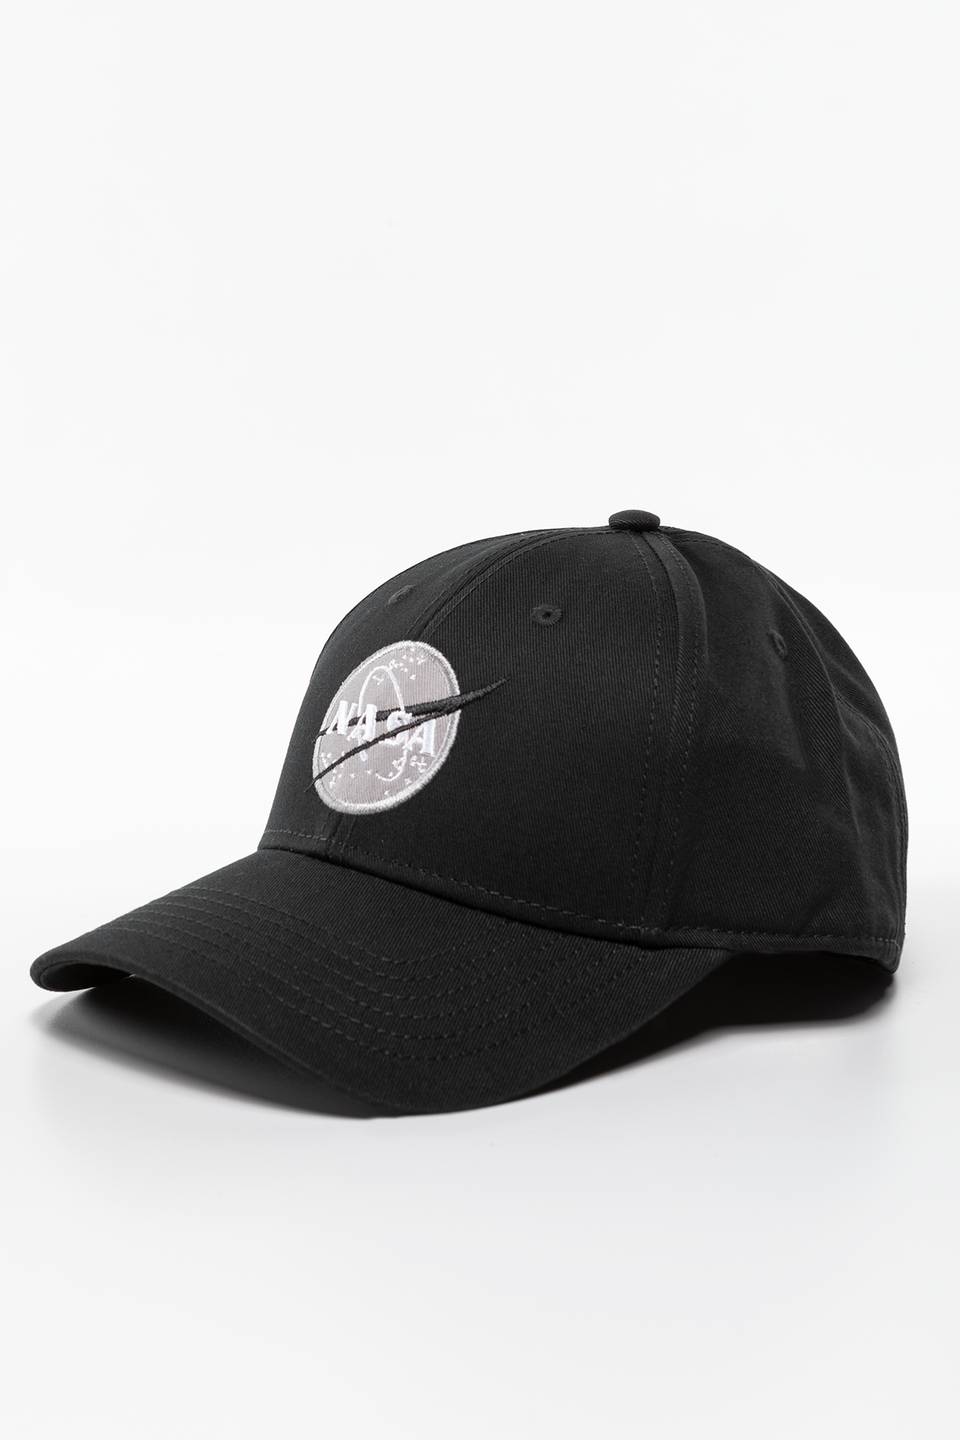 NASA CAP 03 BLACK